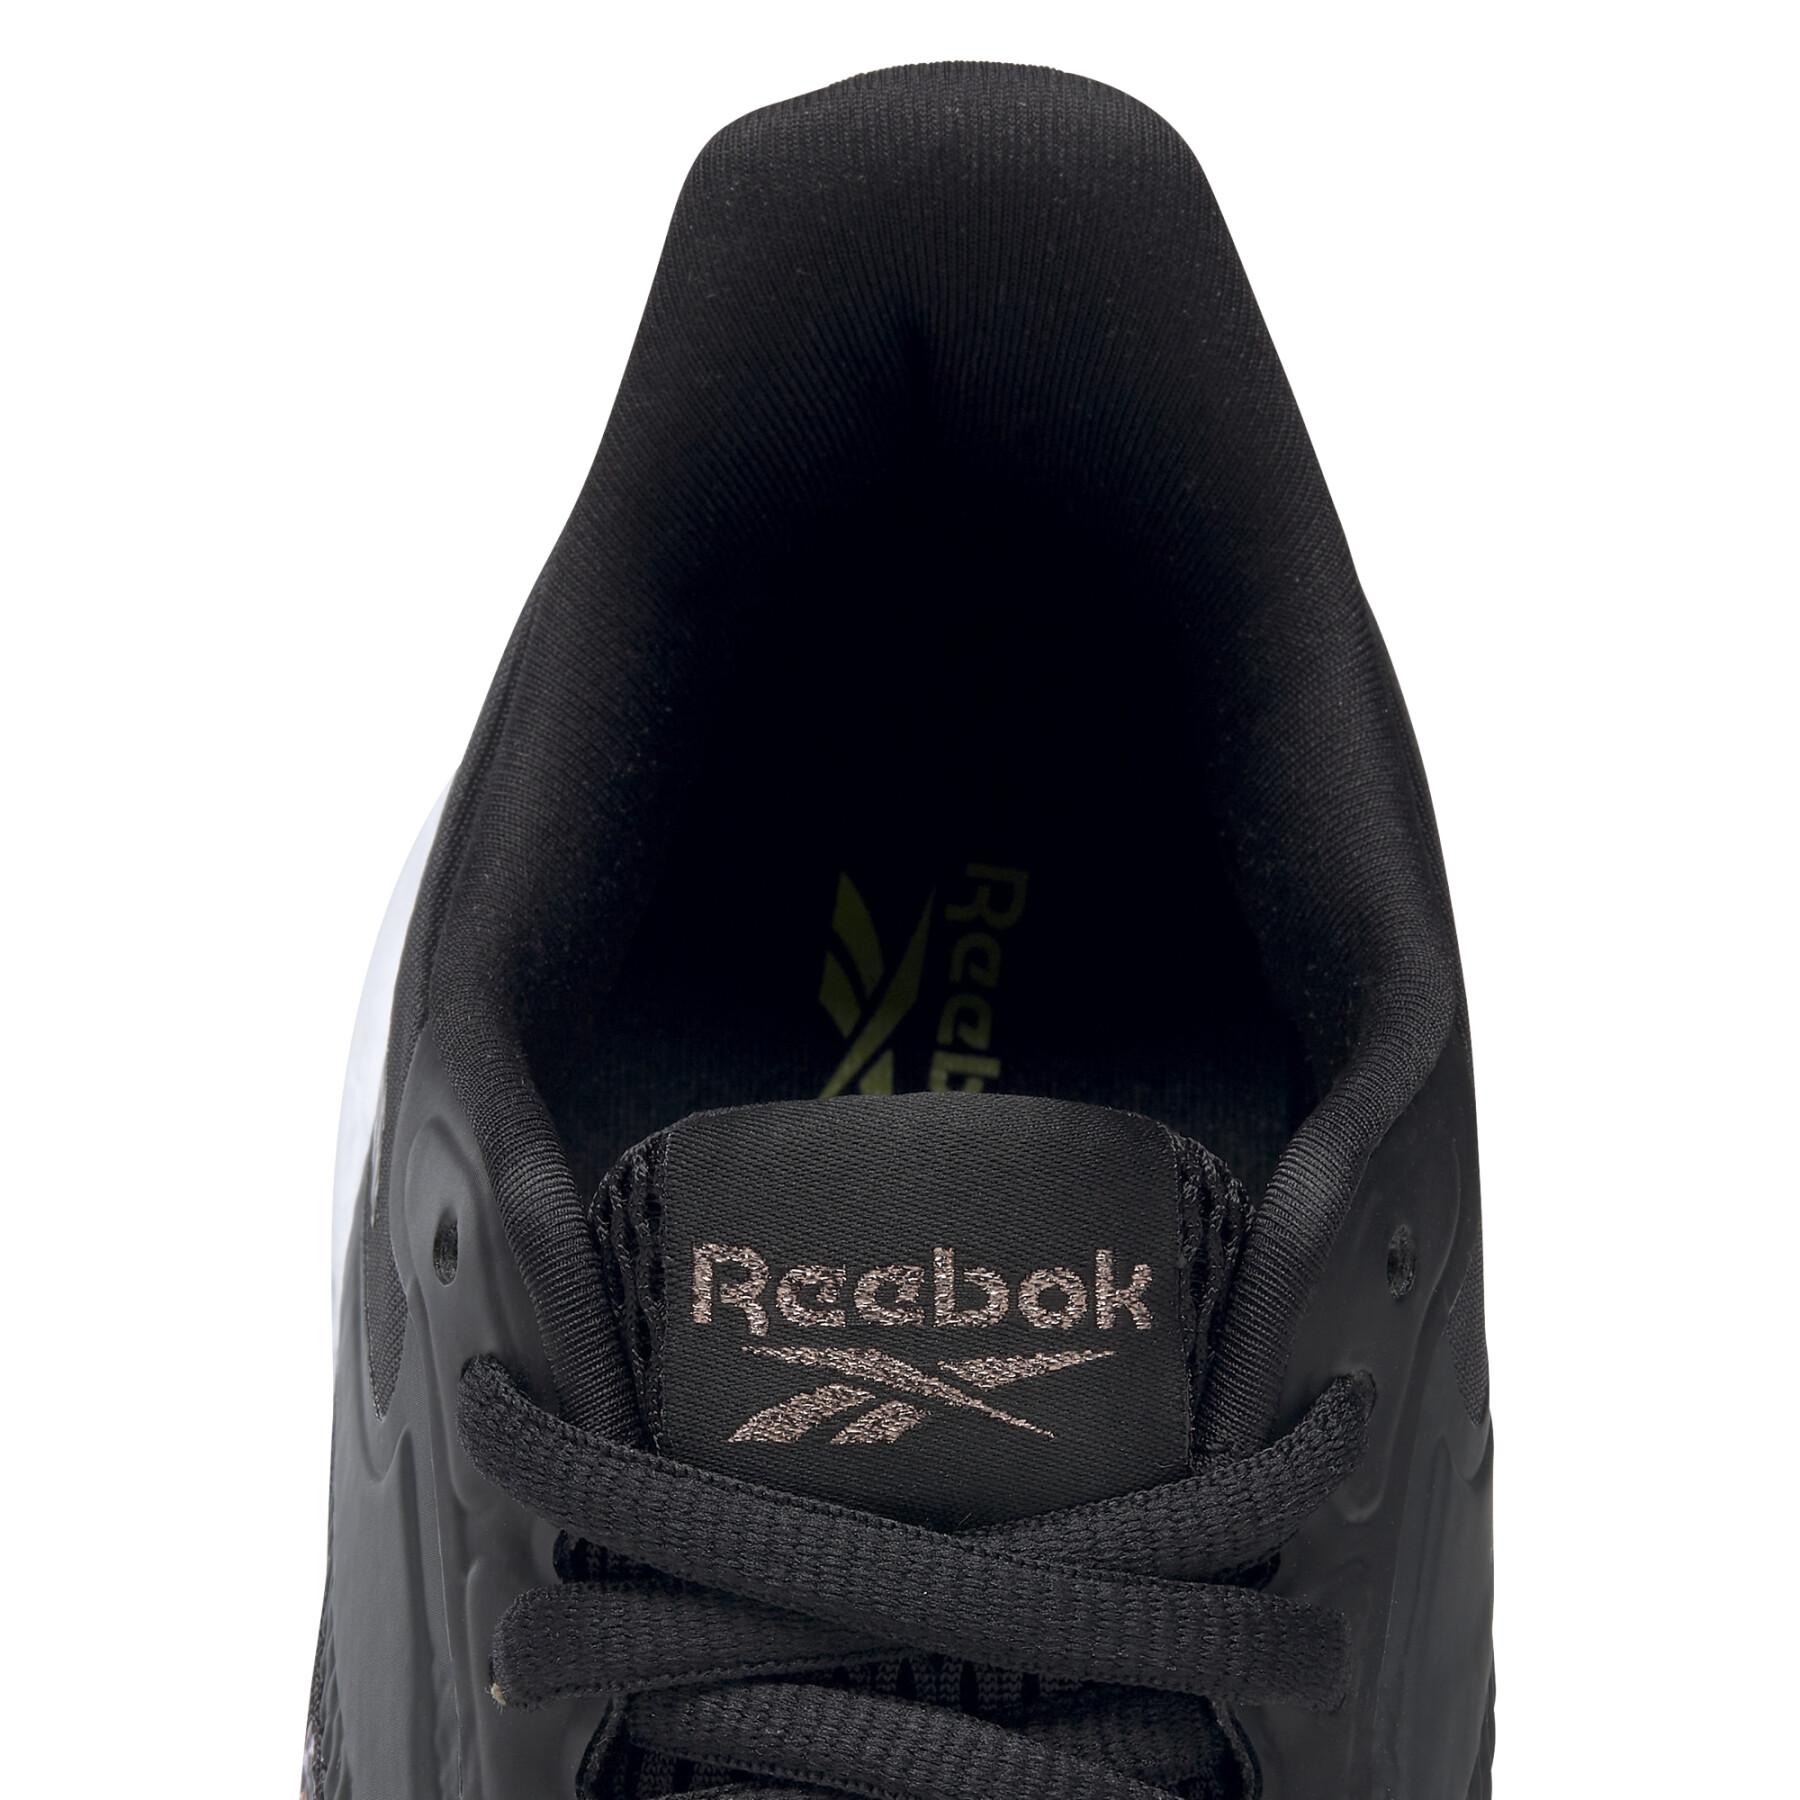 Women's shoes Reebok Energen Run